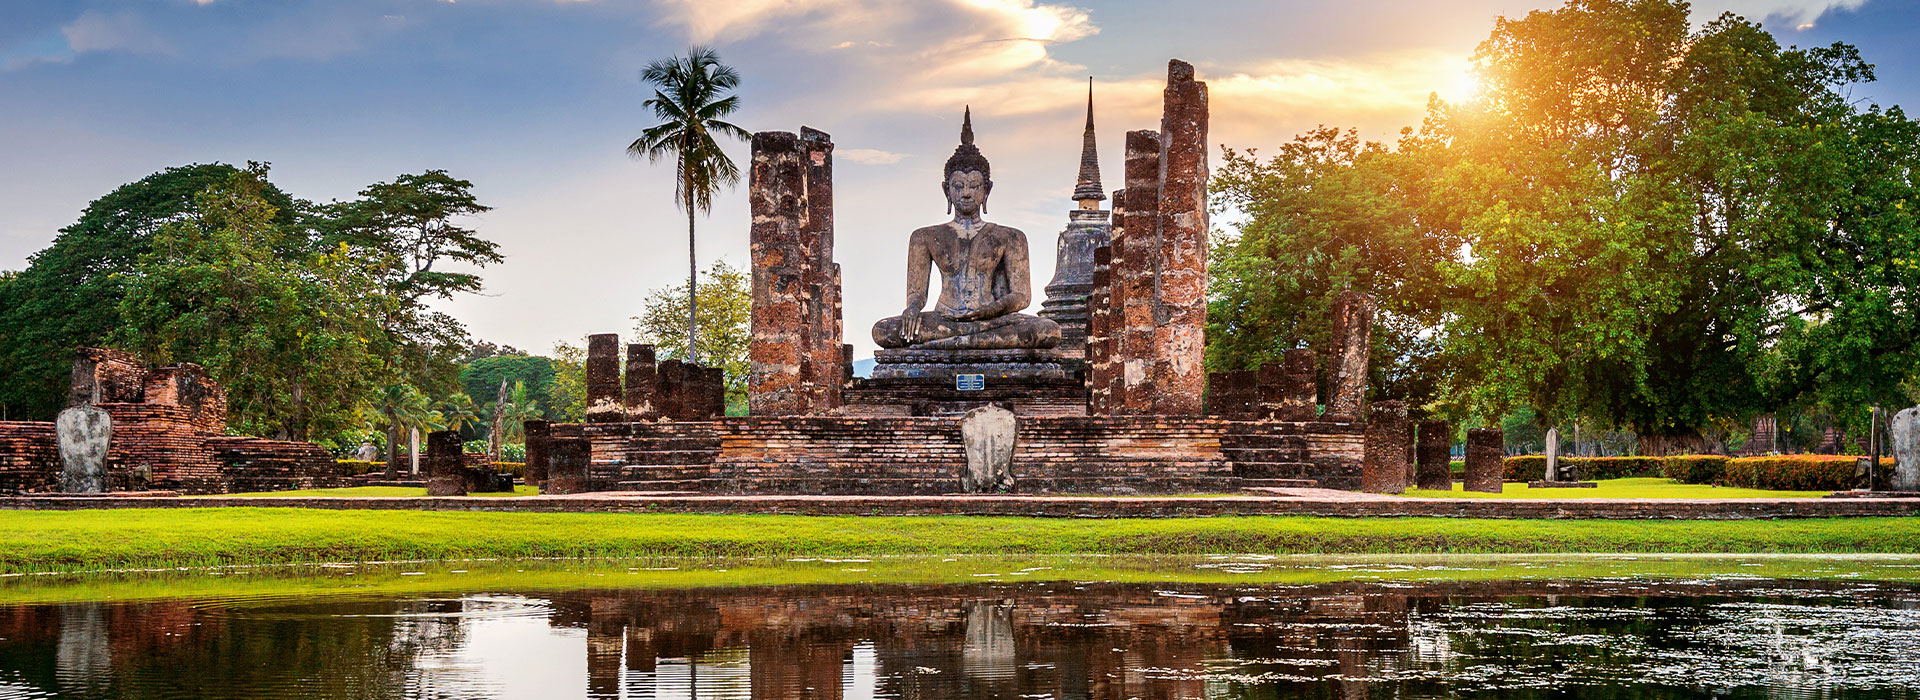 Reisen nach Thailand - Individuelle Reisen nach Thailand - Harry Kolb AG - Tourismus